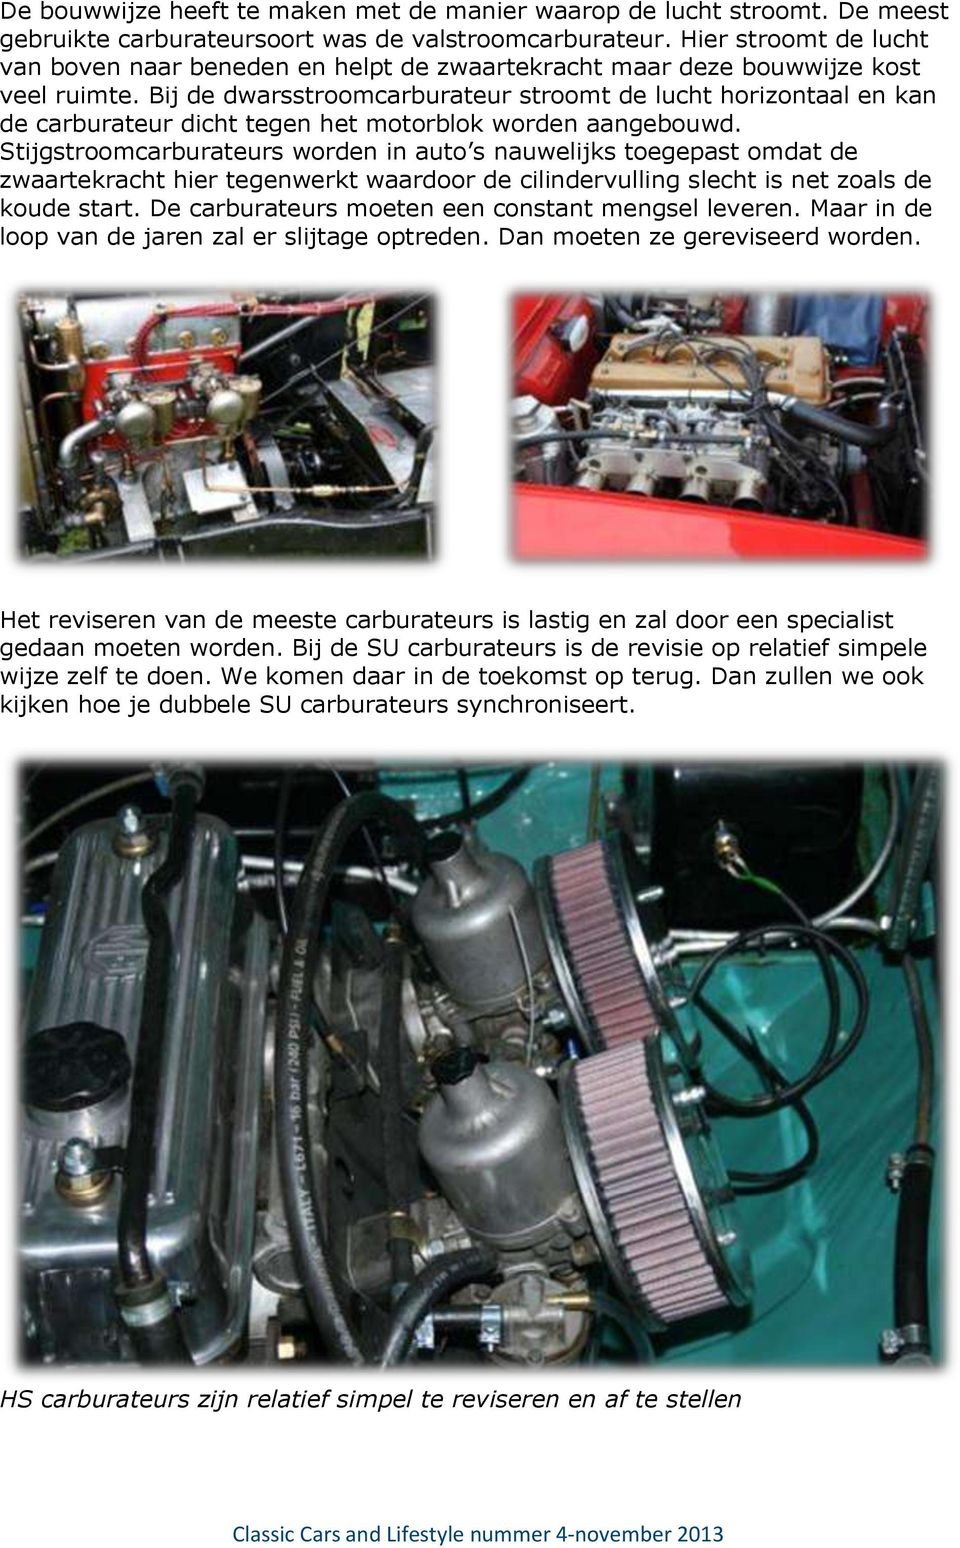 Bij de dwarsstroomcarburateur stroomt de lucht horizontaal en kan de carburateur dicht tegen het motorblok worden aangebouwd.